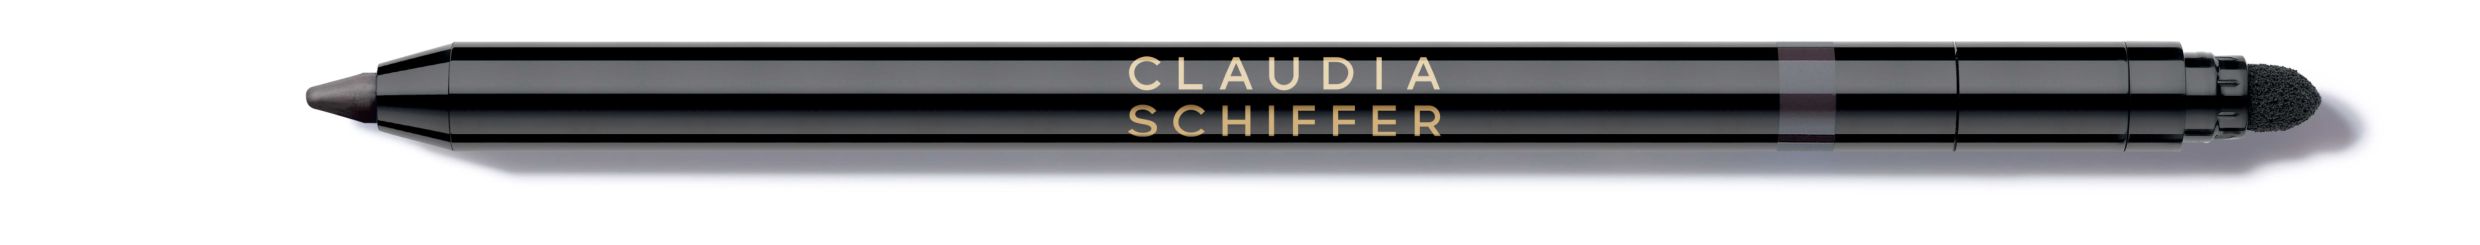 Artdeco Claudia Schiffer smokey eye styler glint